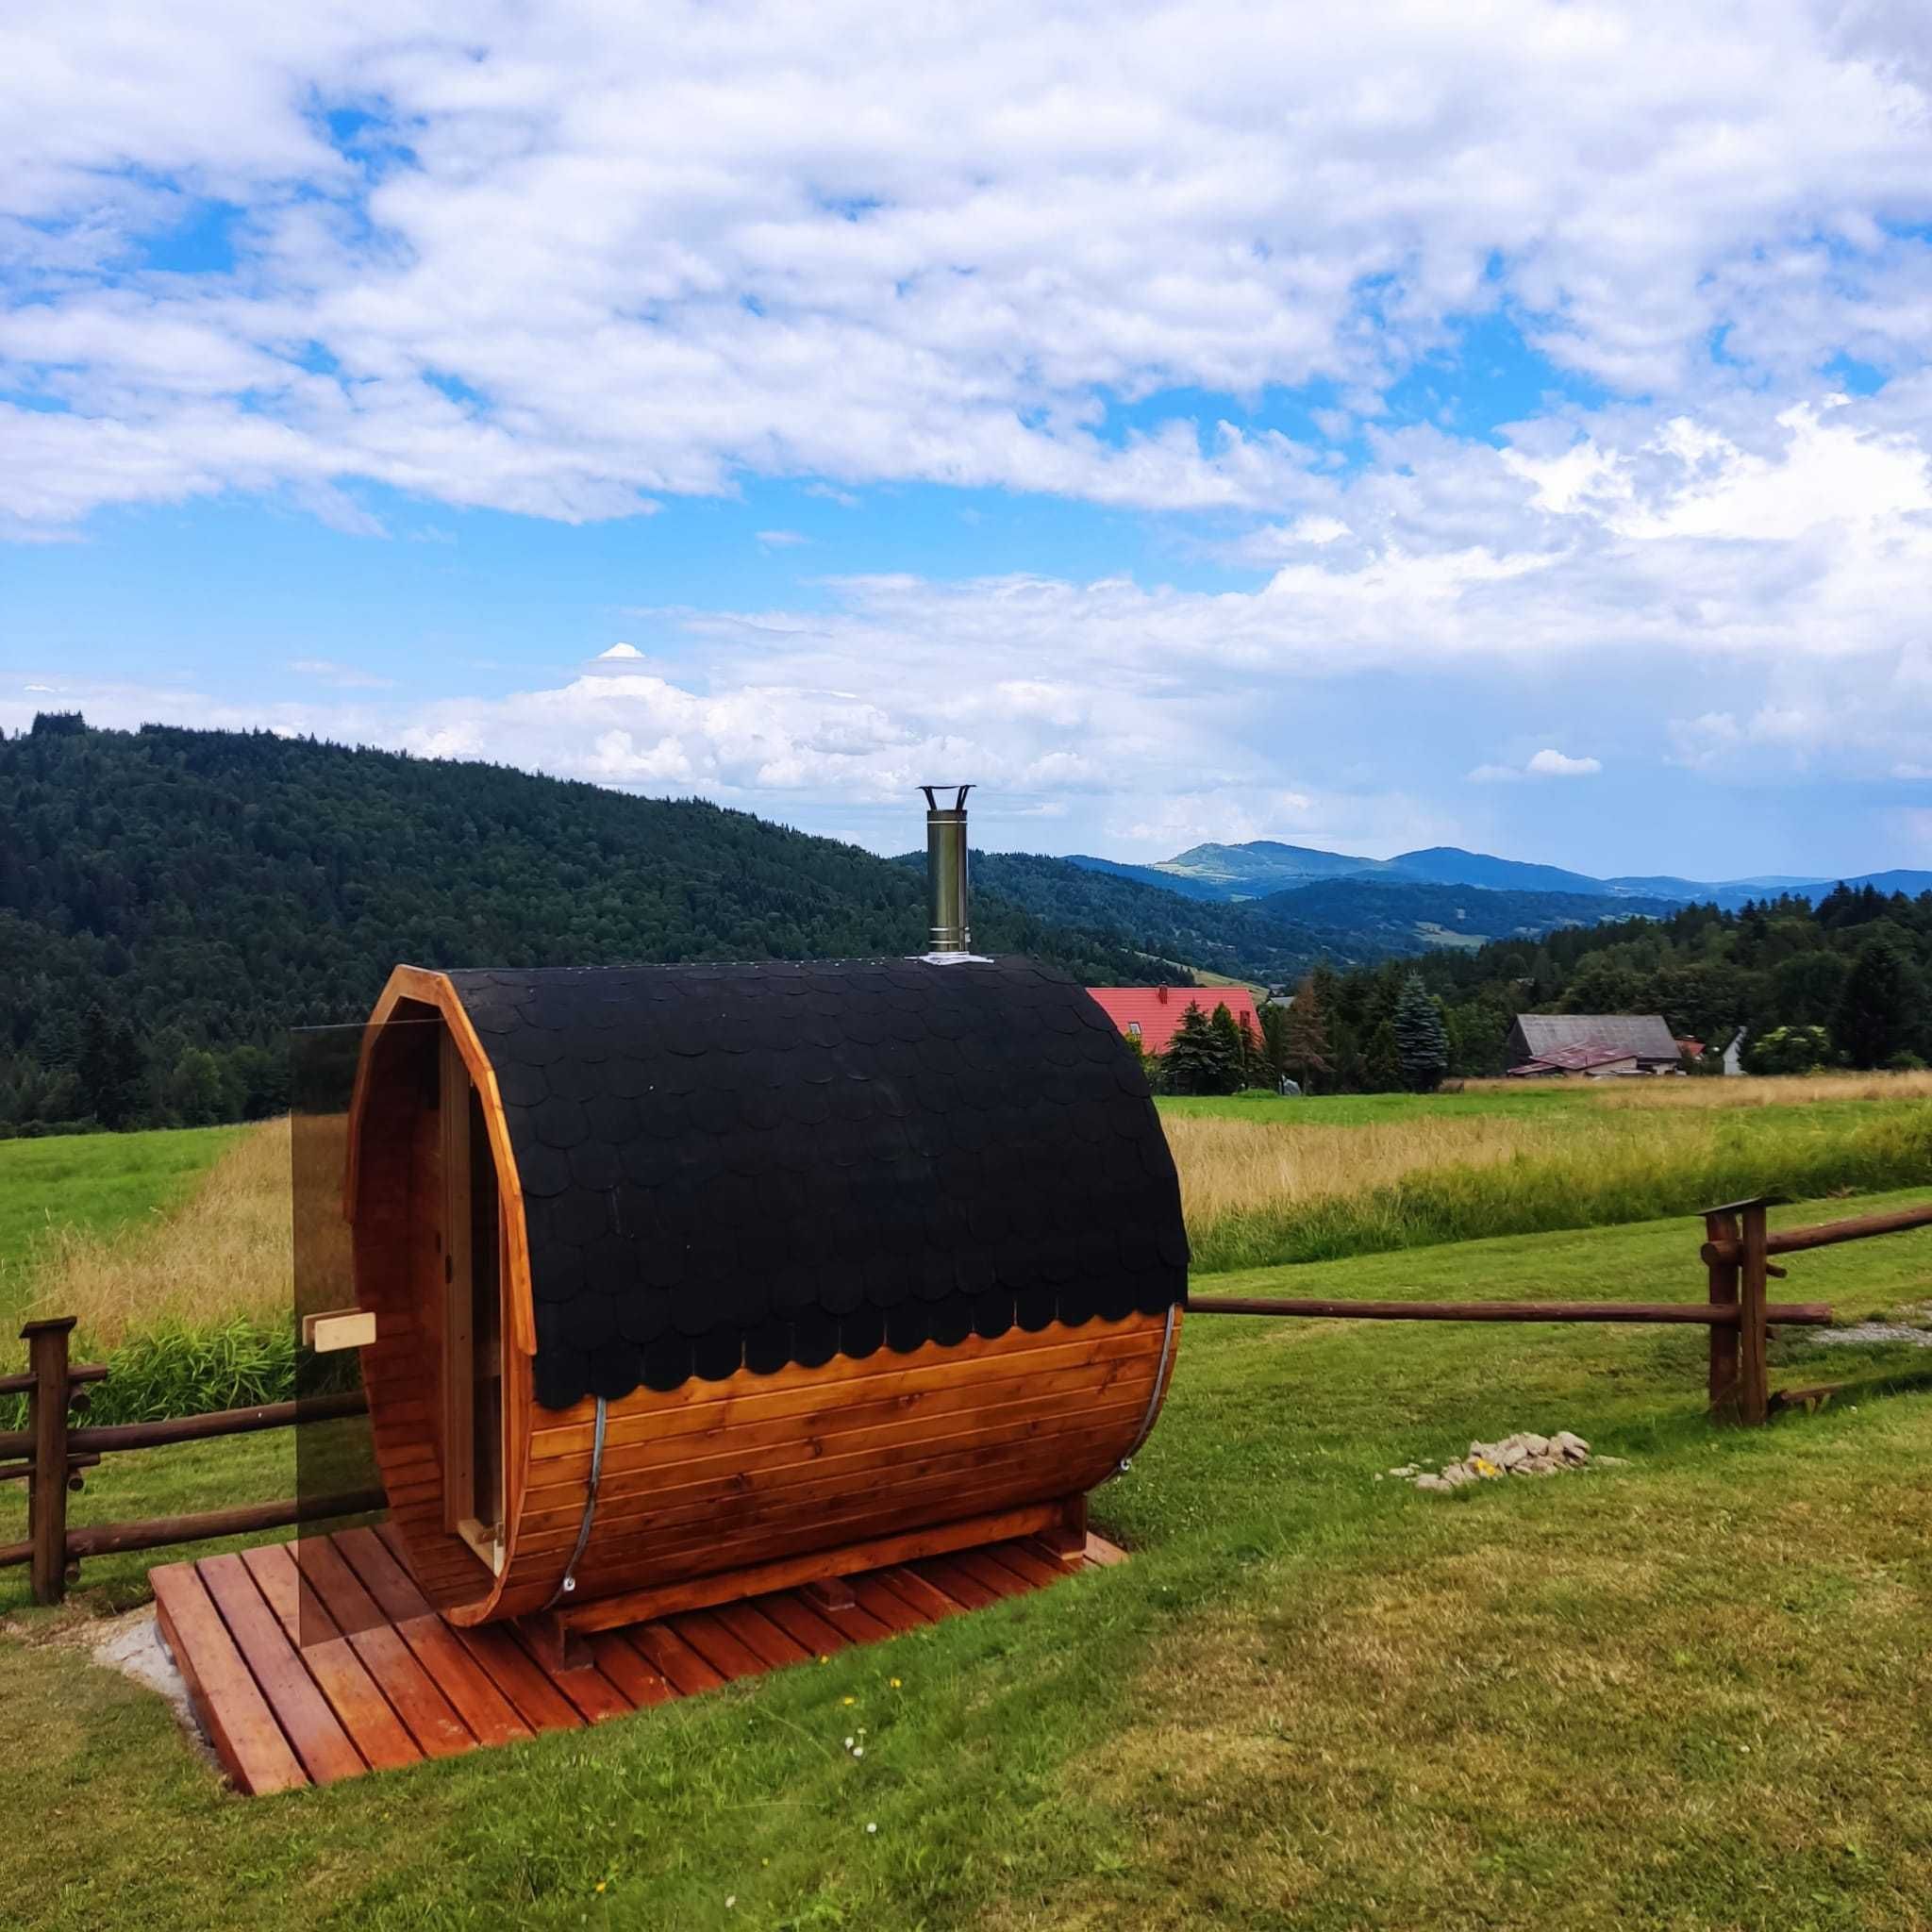 Klimatyczny dom w górach z balią i sauną